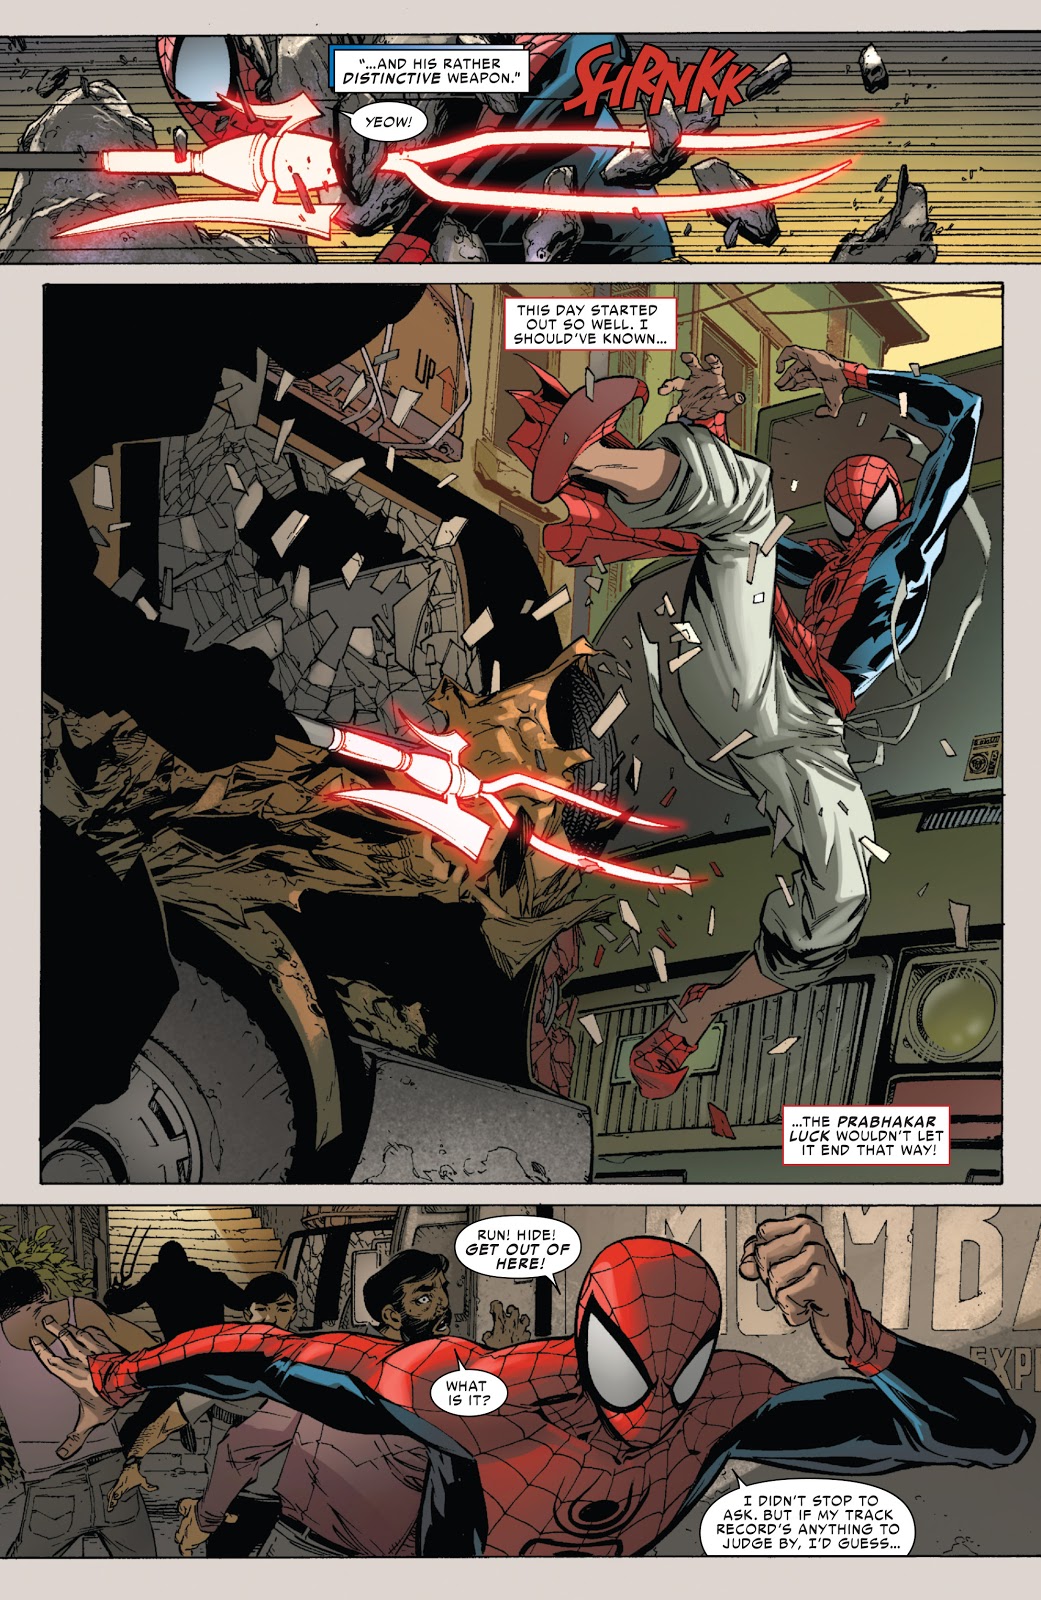 Superior Spider-Man Meets Indian Spider-Man